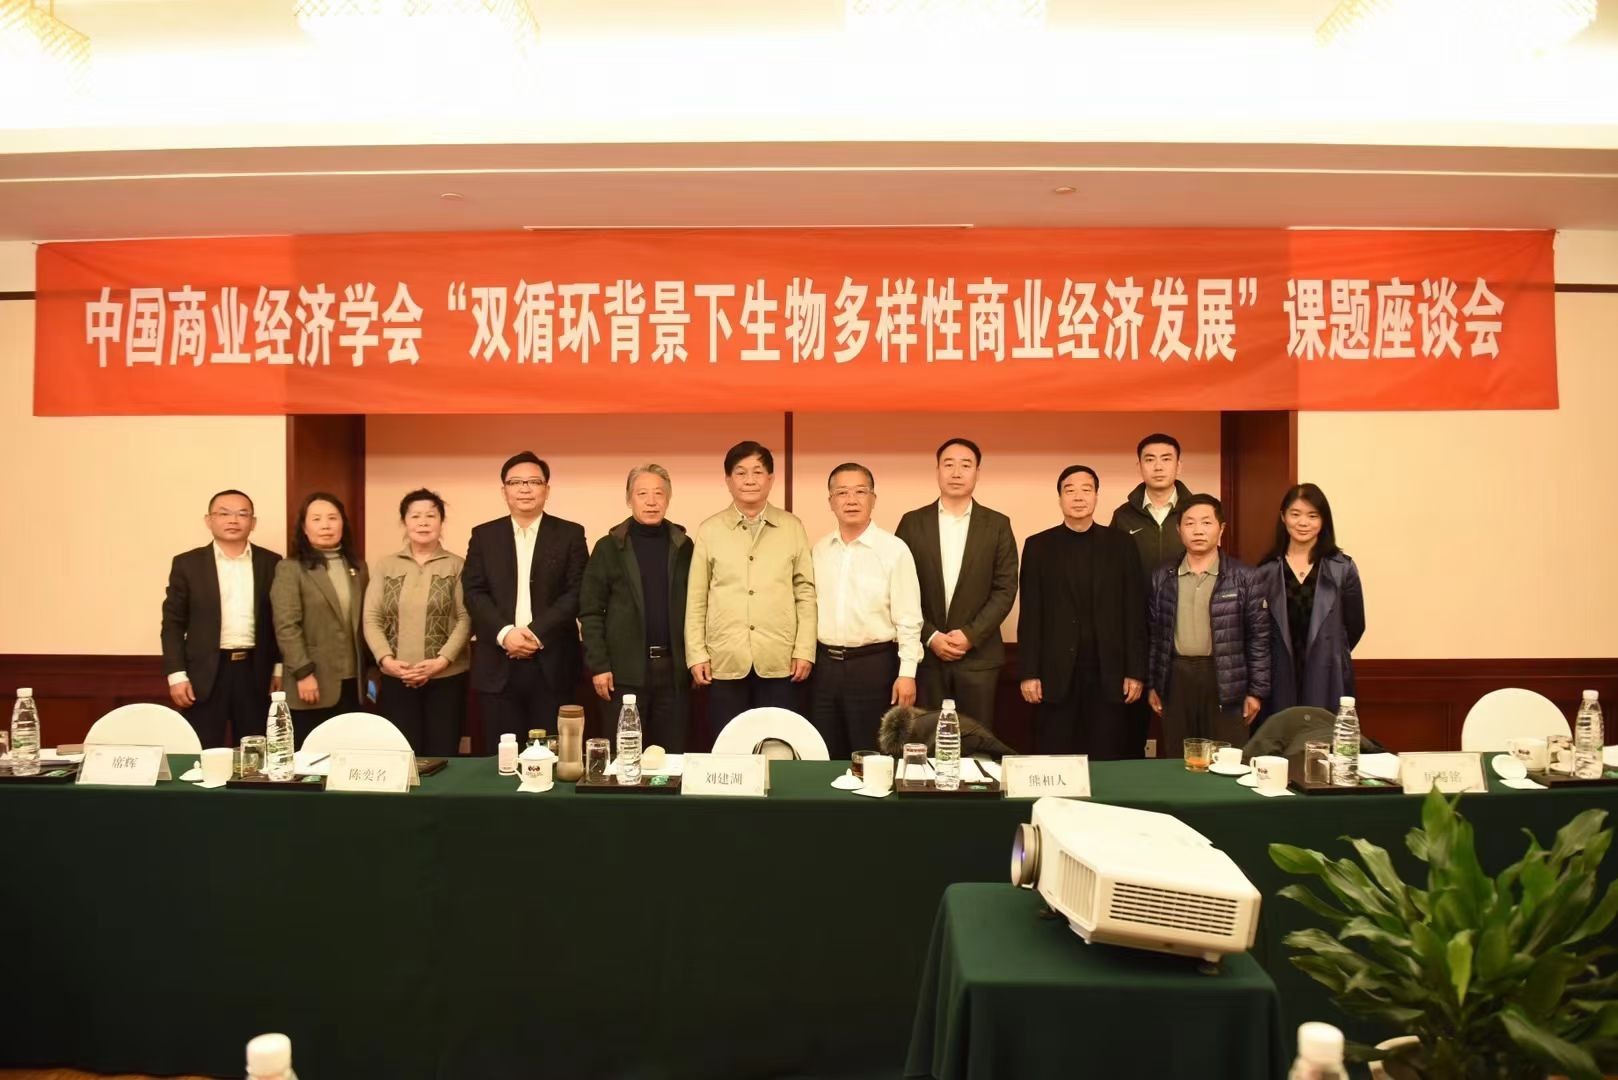 中国商业经济学会“双循环背景下生物多样性商业经济发展“课题座谈会在昆明举行